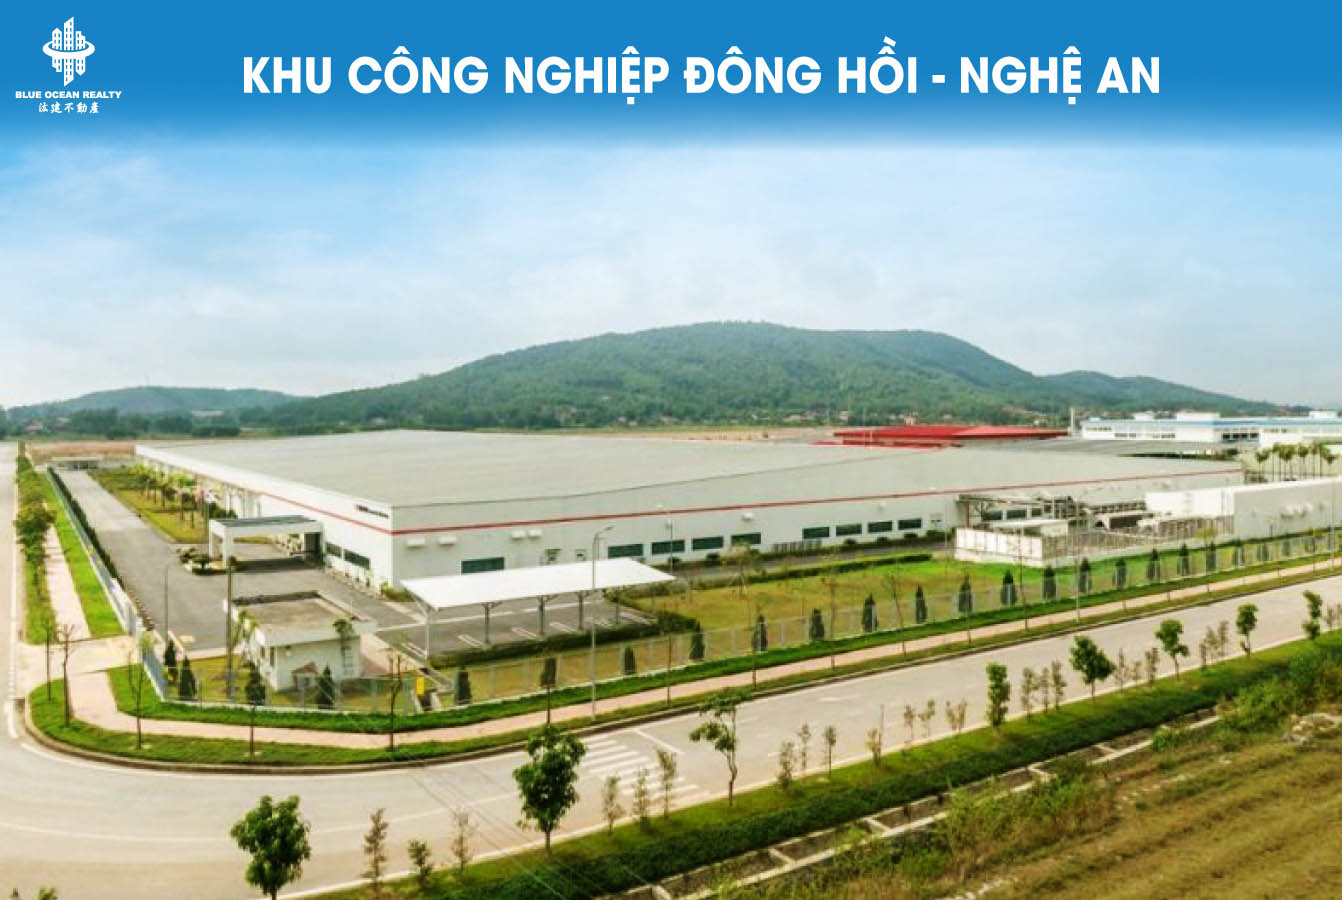 Khu công nghiệp (KCN) Đông Hồi - Nghệ An